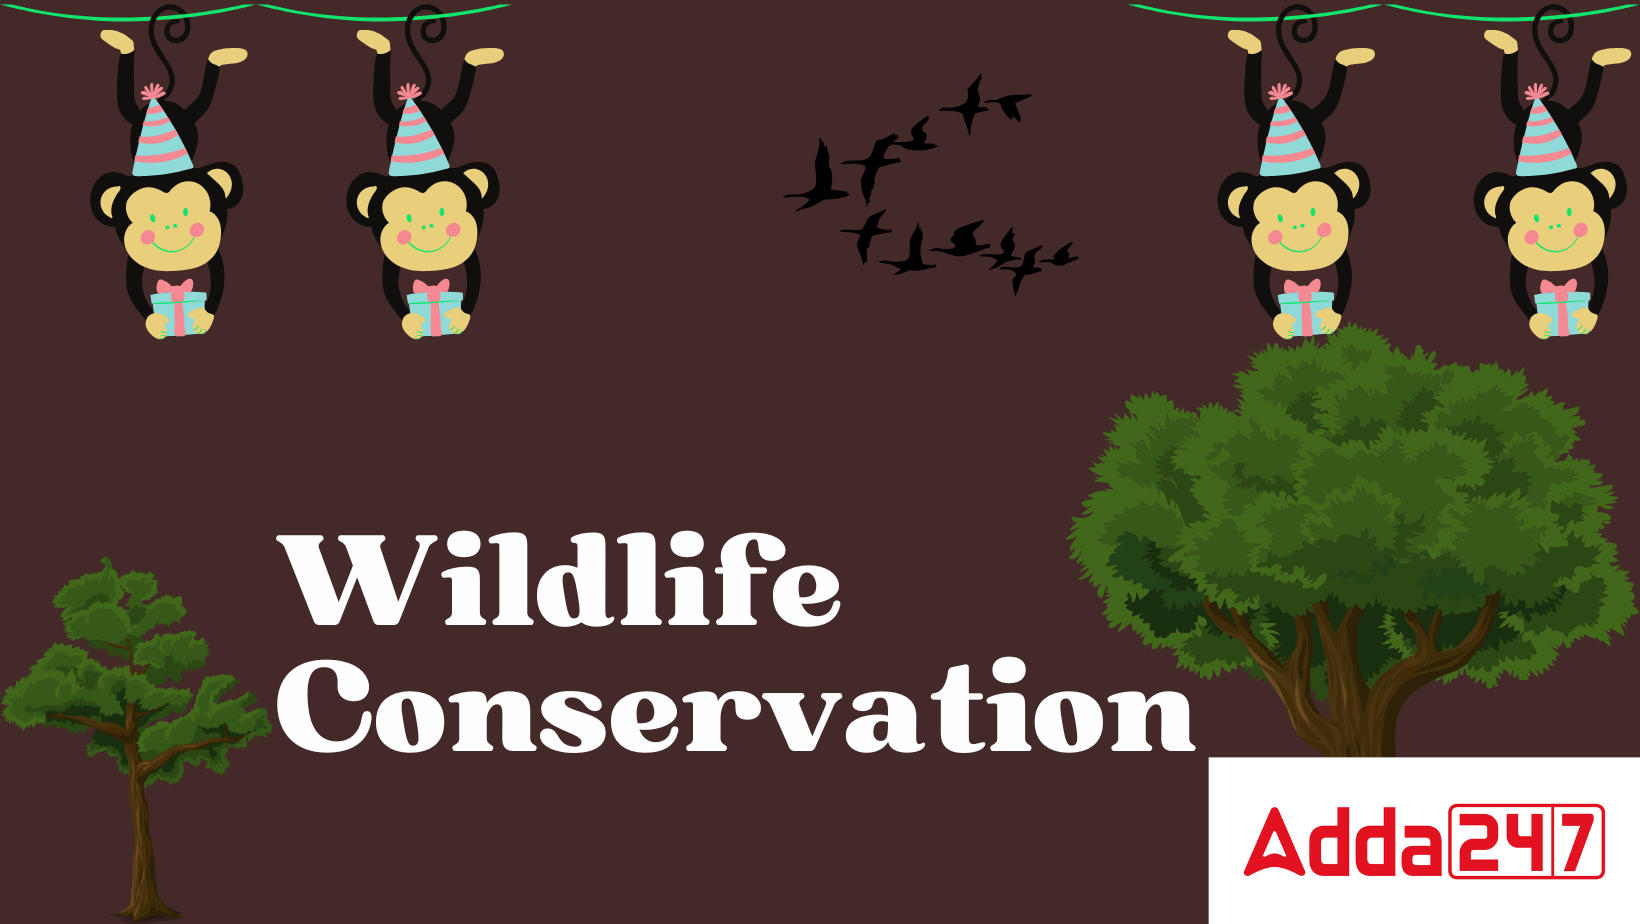 Wildlife Conservation